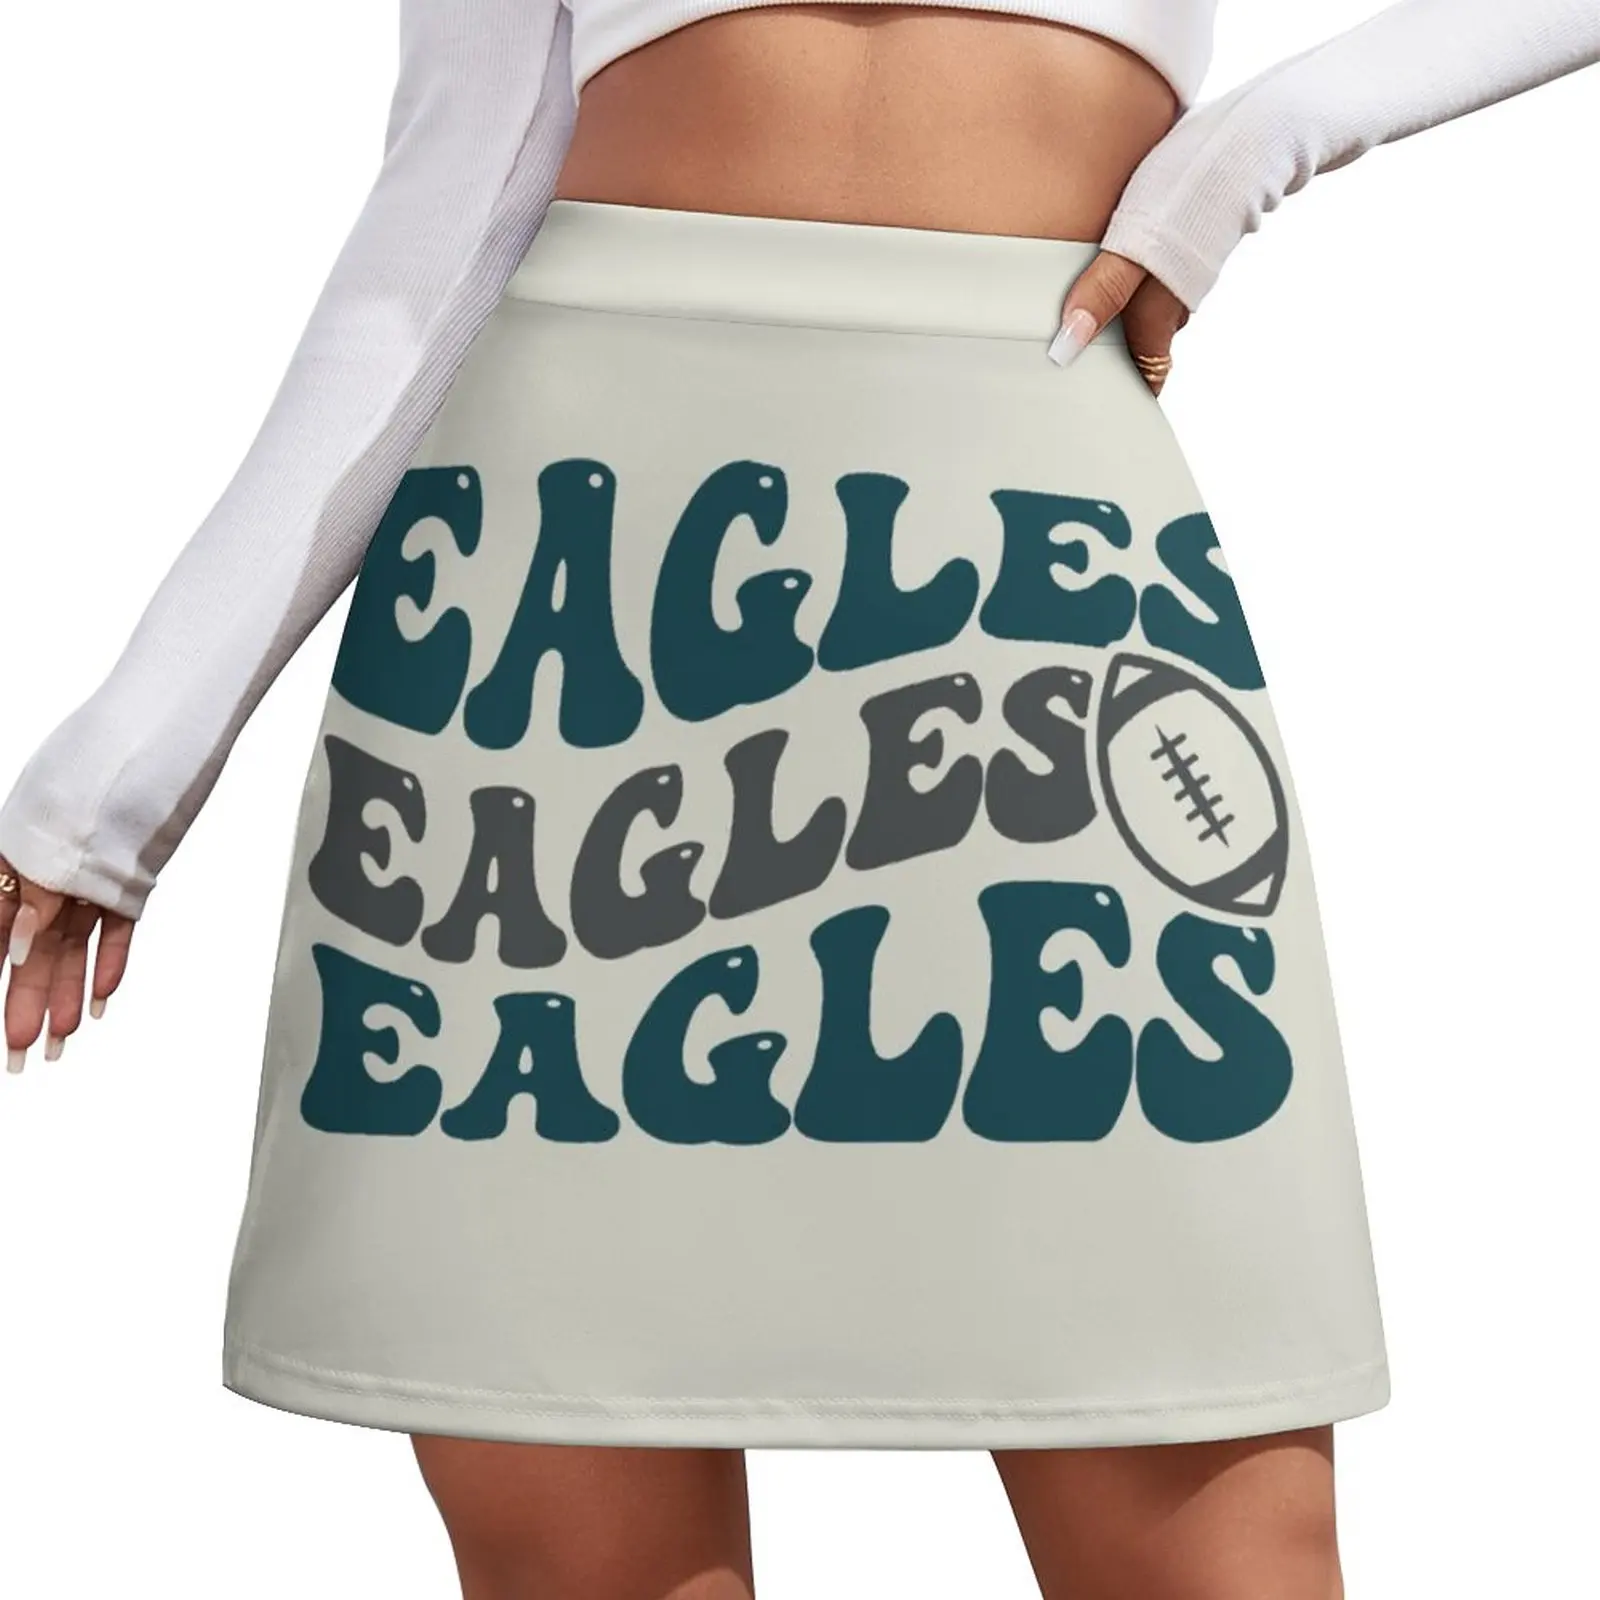 Eagles Football Mini Skirt Korean skirts dress mini skirt for women